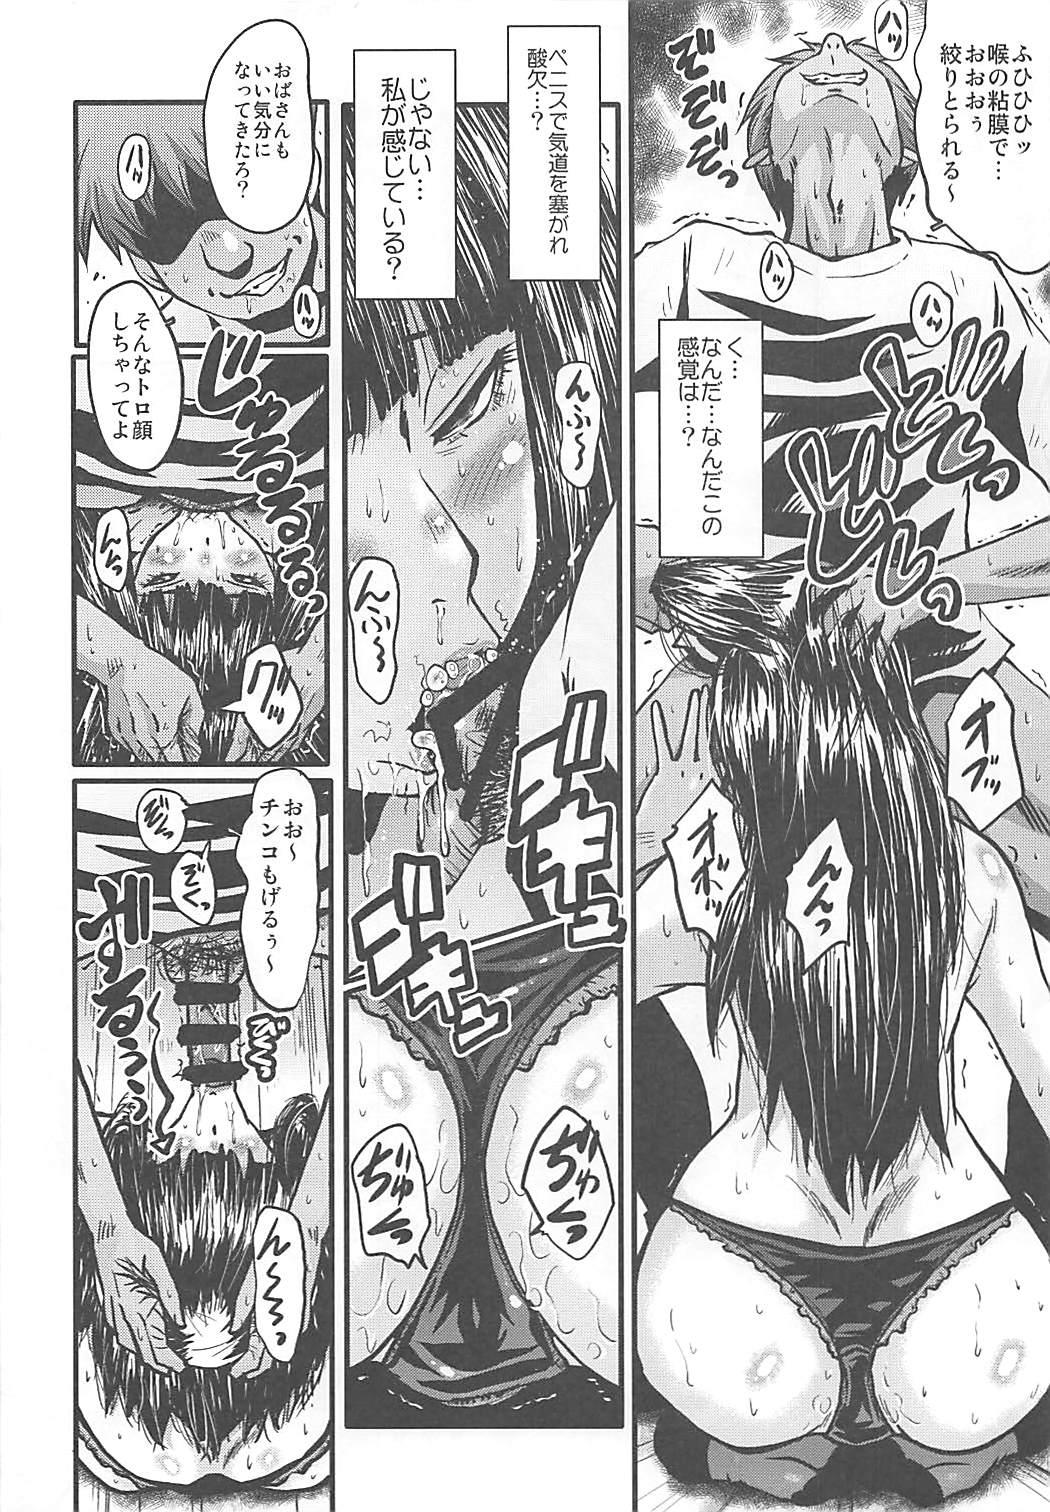 Hd Porn (C93) [Urakata Honpo (SINK)] Urabambi Vol. 56 ~Choubatsubou no Oyako Ana~ Bijin Oyako no Kimeseku Kairaku Jigoku~ (Girls und Panzer) - Girls und panzer Bubble Butt - Page 11